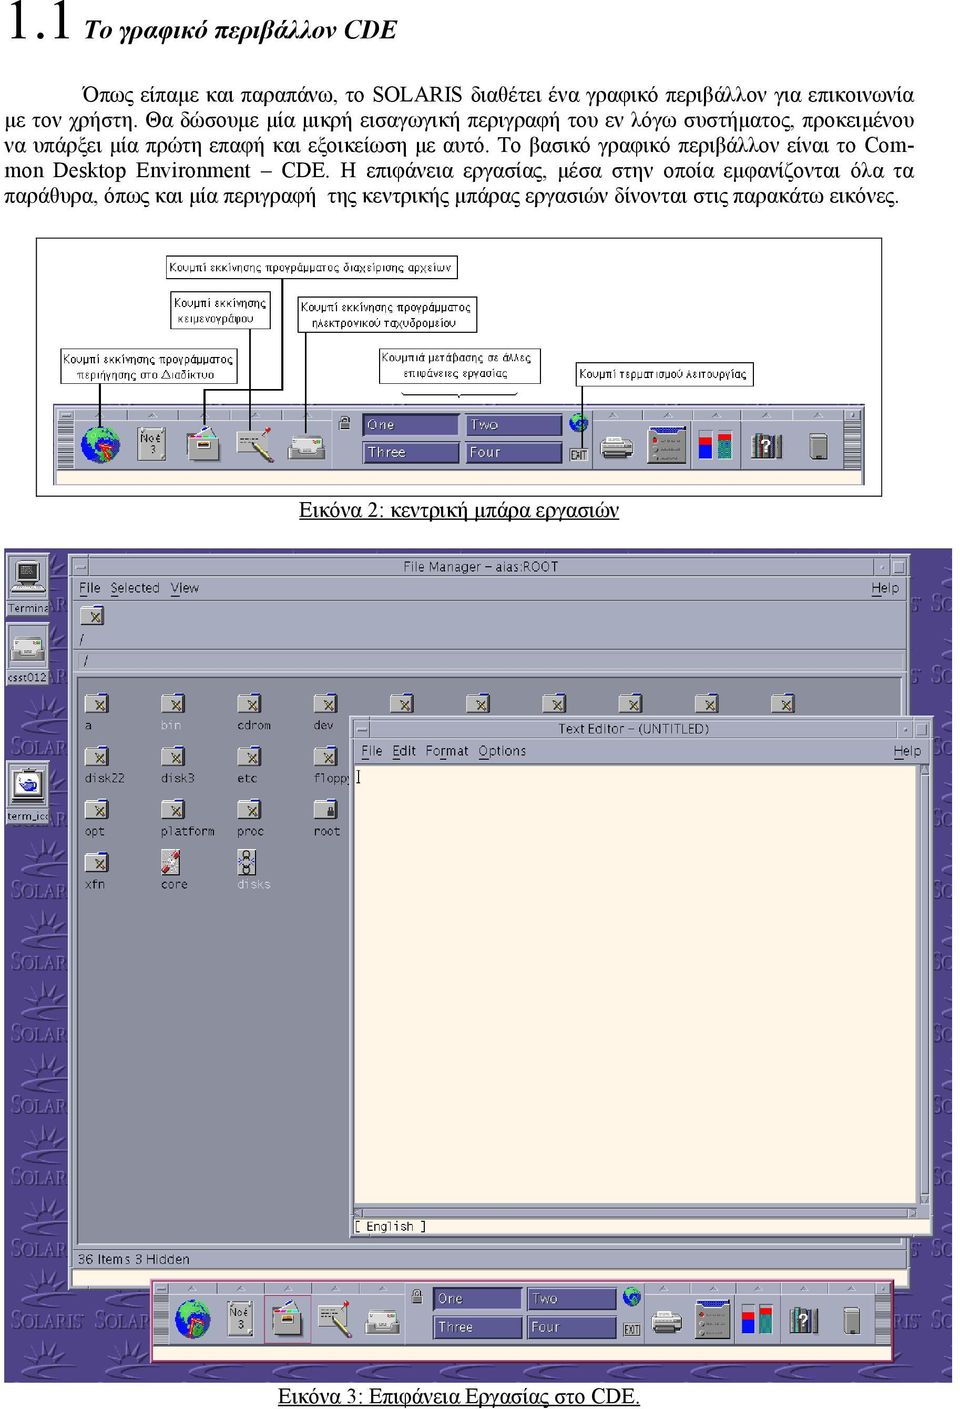 Το βασικό γραφικό περιβάλλον είναι το Common Desktop Environment CDE.